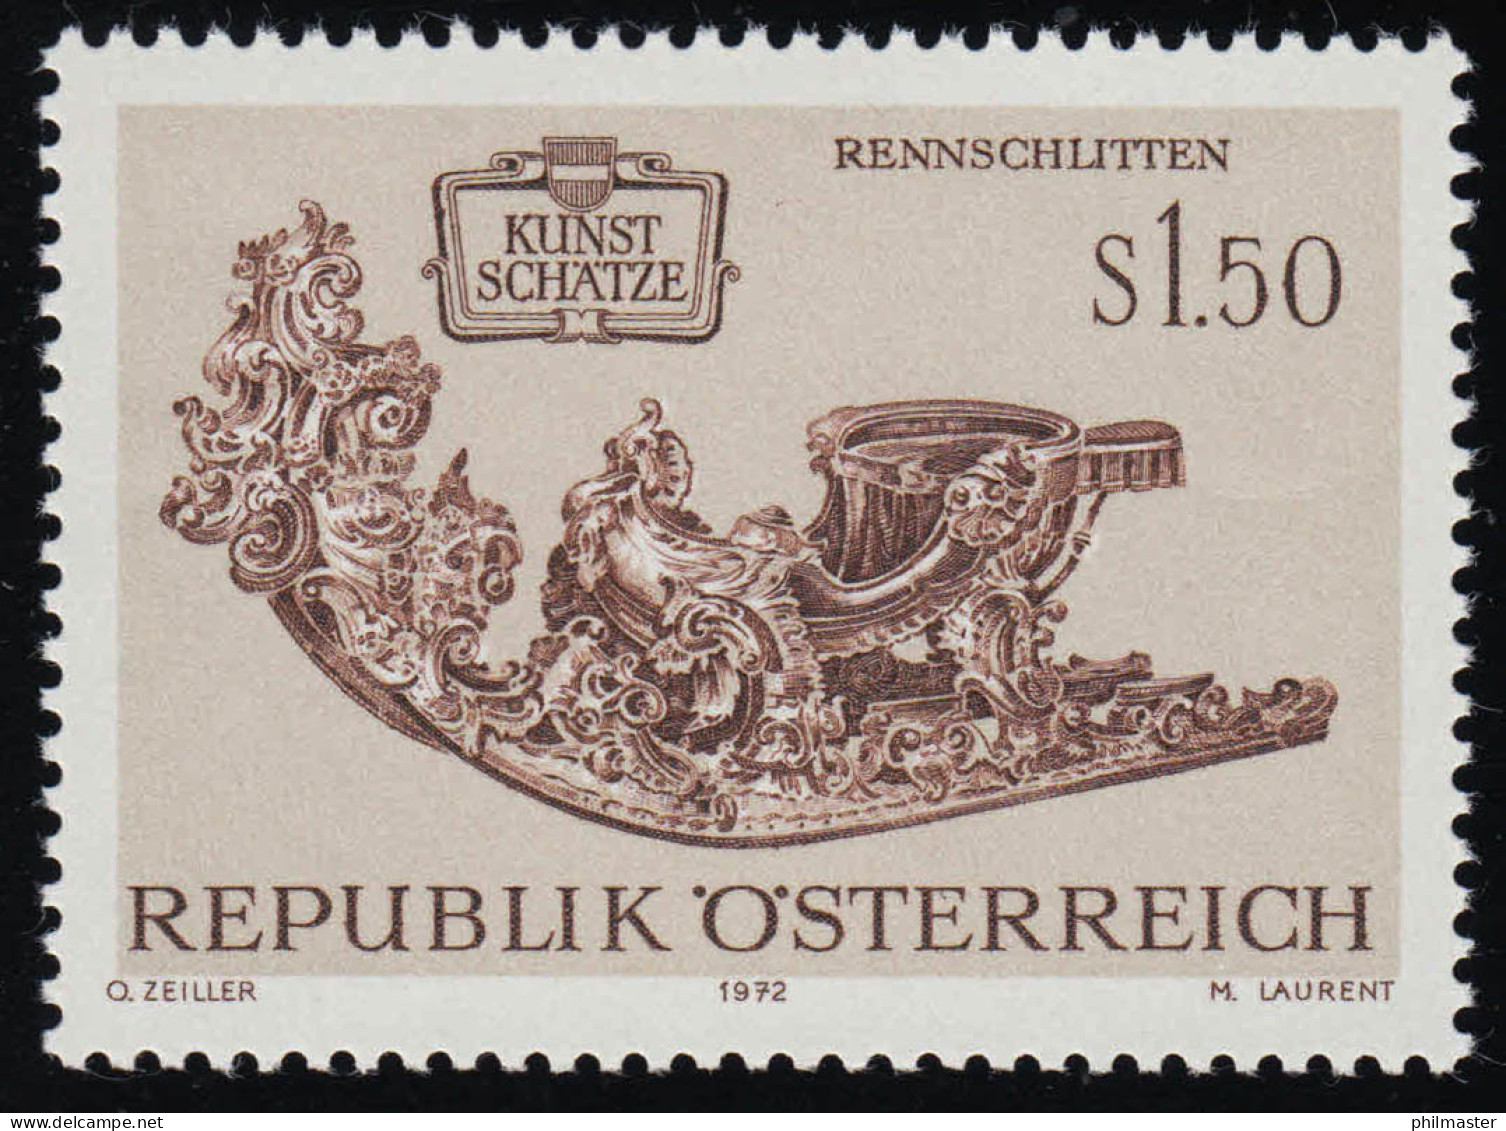 1406 Kunstschätze Aus Der Wagenburg, Rennschlitten, 1.50 S, Postfrisch ** - Unused Stamps